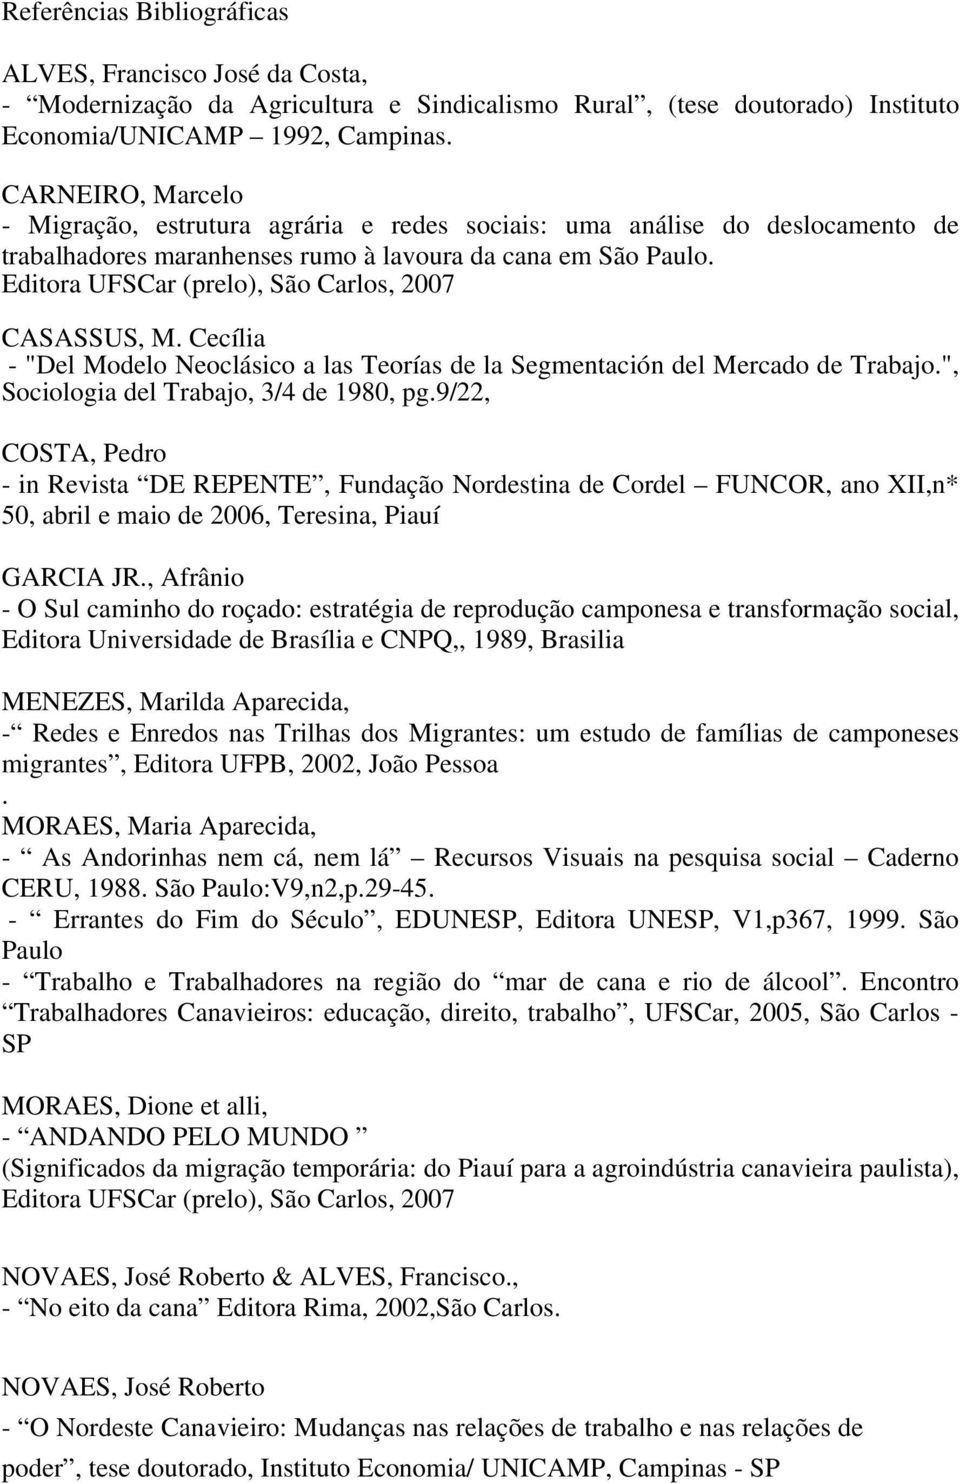 Editora UFSCar (prelo), São Carlos, 2007 CASASSUS, M. Cecília - "Del Modelo Neoclásico a las Teorías de la Segmentación del Mercado de Trabajo.", Sociologia del Trabajo, 3/4 de 1980, pg.